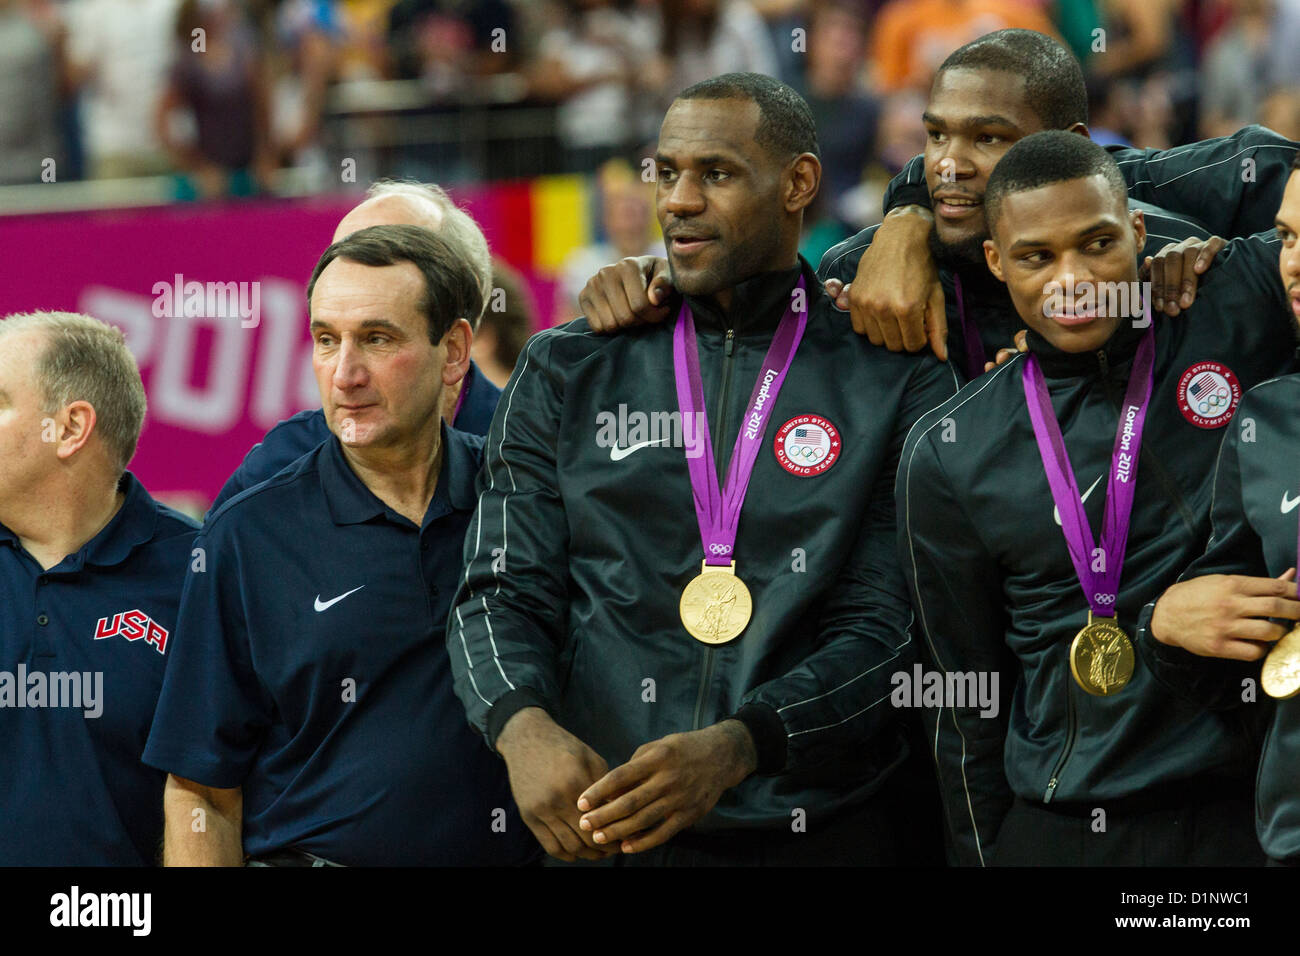 USA remporte la médaille d'or sur l'Espagne dans le basketball masculin aux Jeux Olympiques d'été, Londres 2012 Banque D'Images